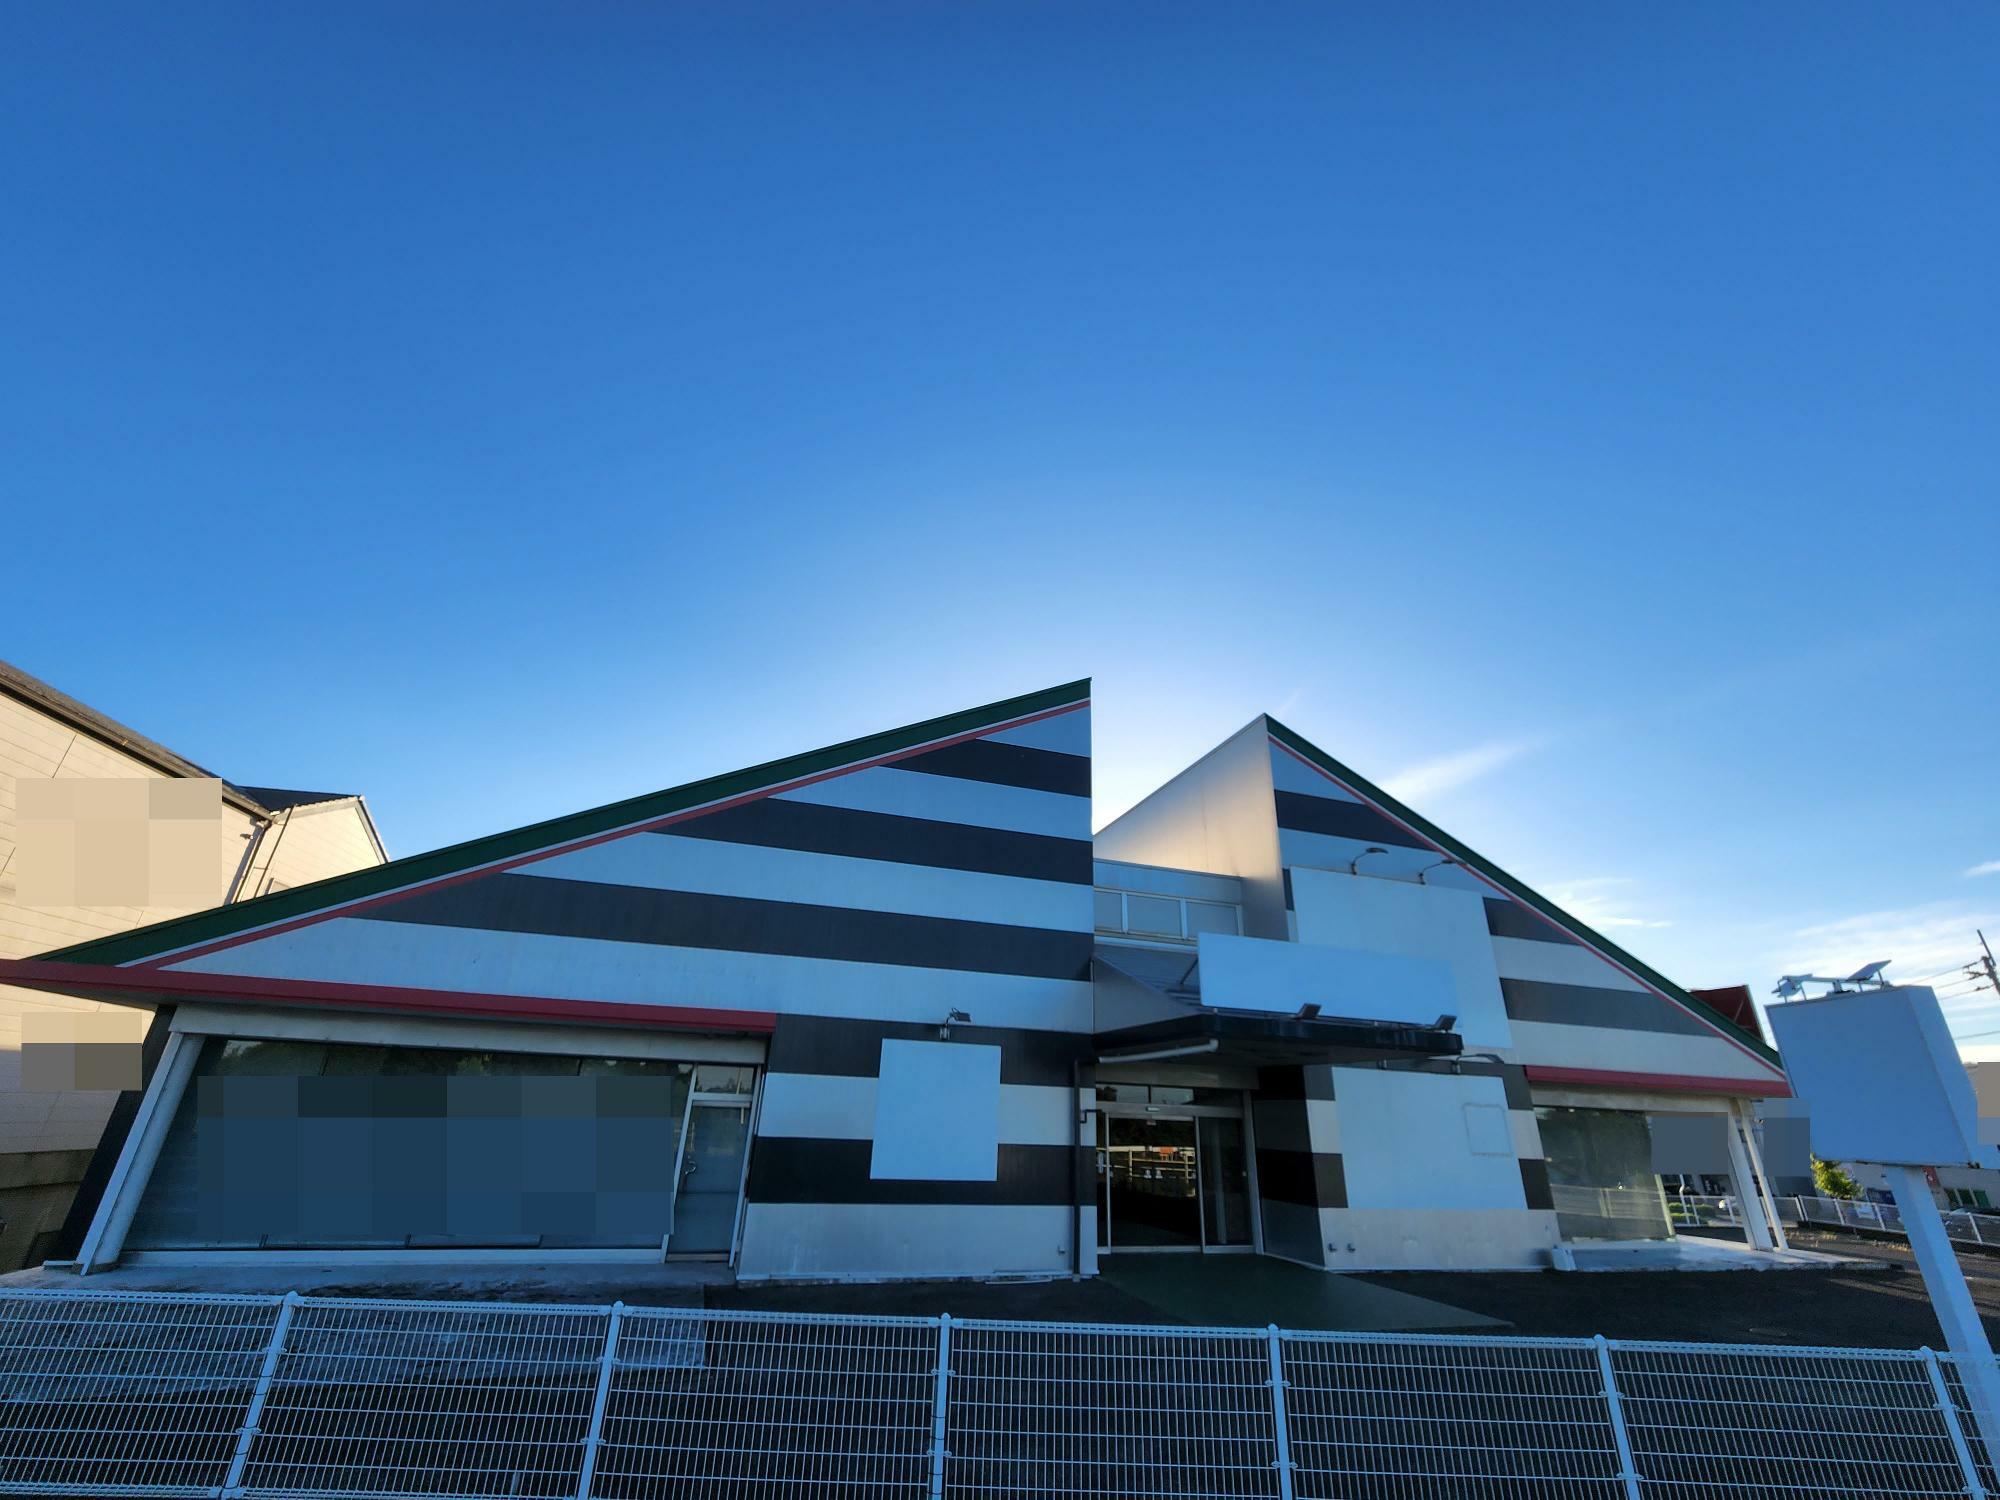 「アップガレージ&アップガレージライダース徳島店」としてオープンした「大きいサイズの店 フォーエル」の建物。撮影日は、2023年8月11日。